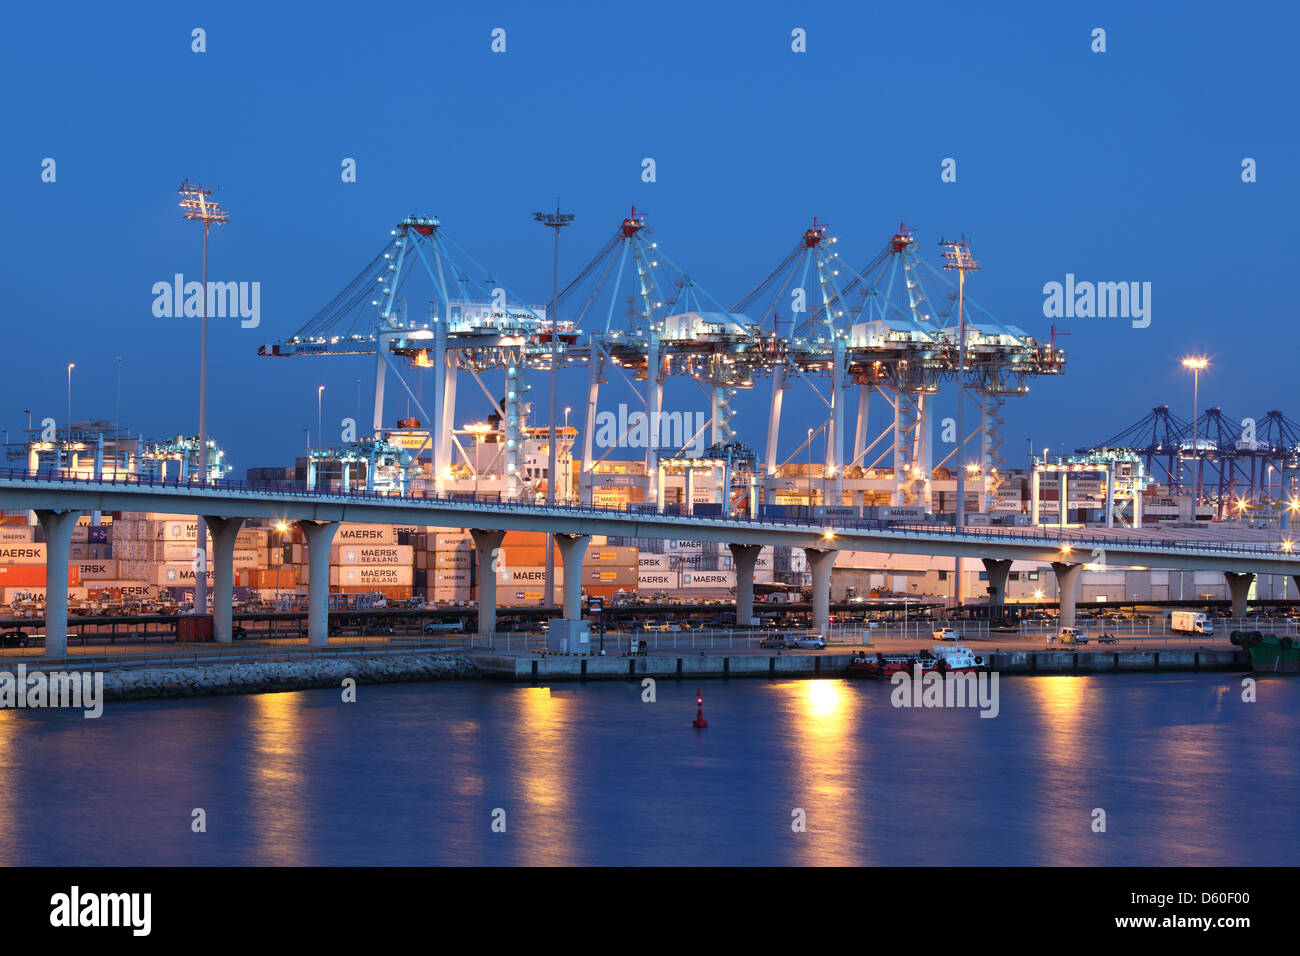 Port à conteneurs à Algeciras, illuminé la nuit. Andalousie, Espagne Banque D'Images